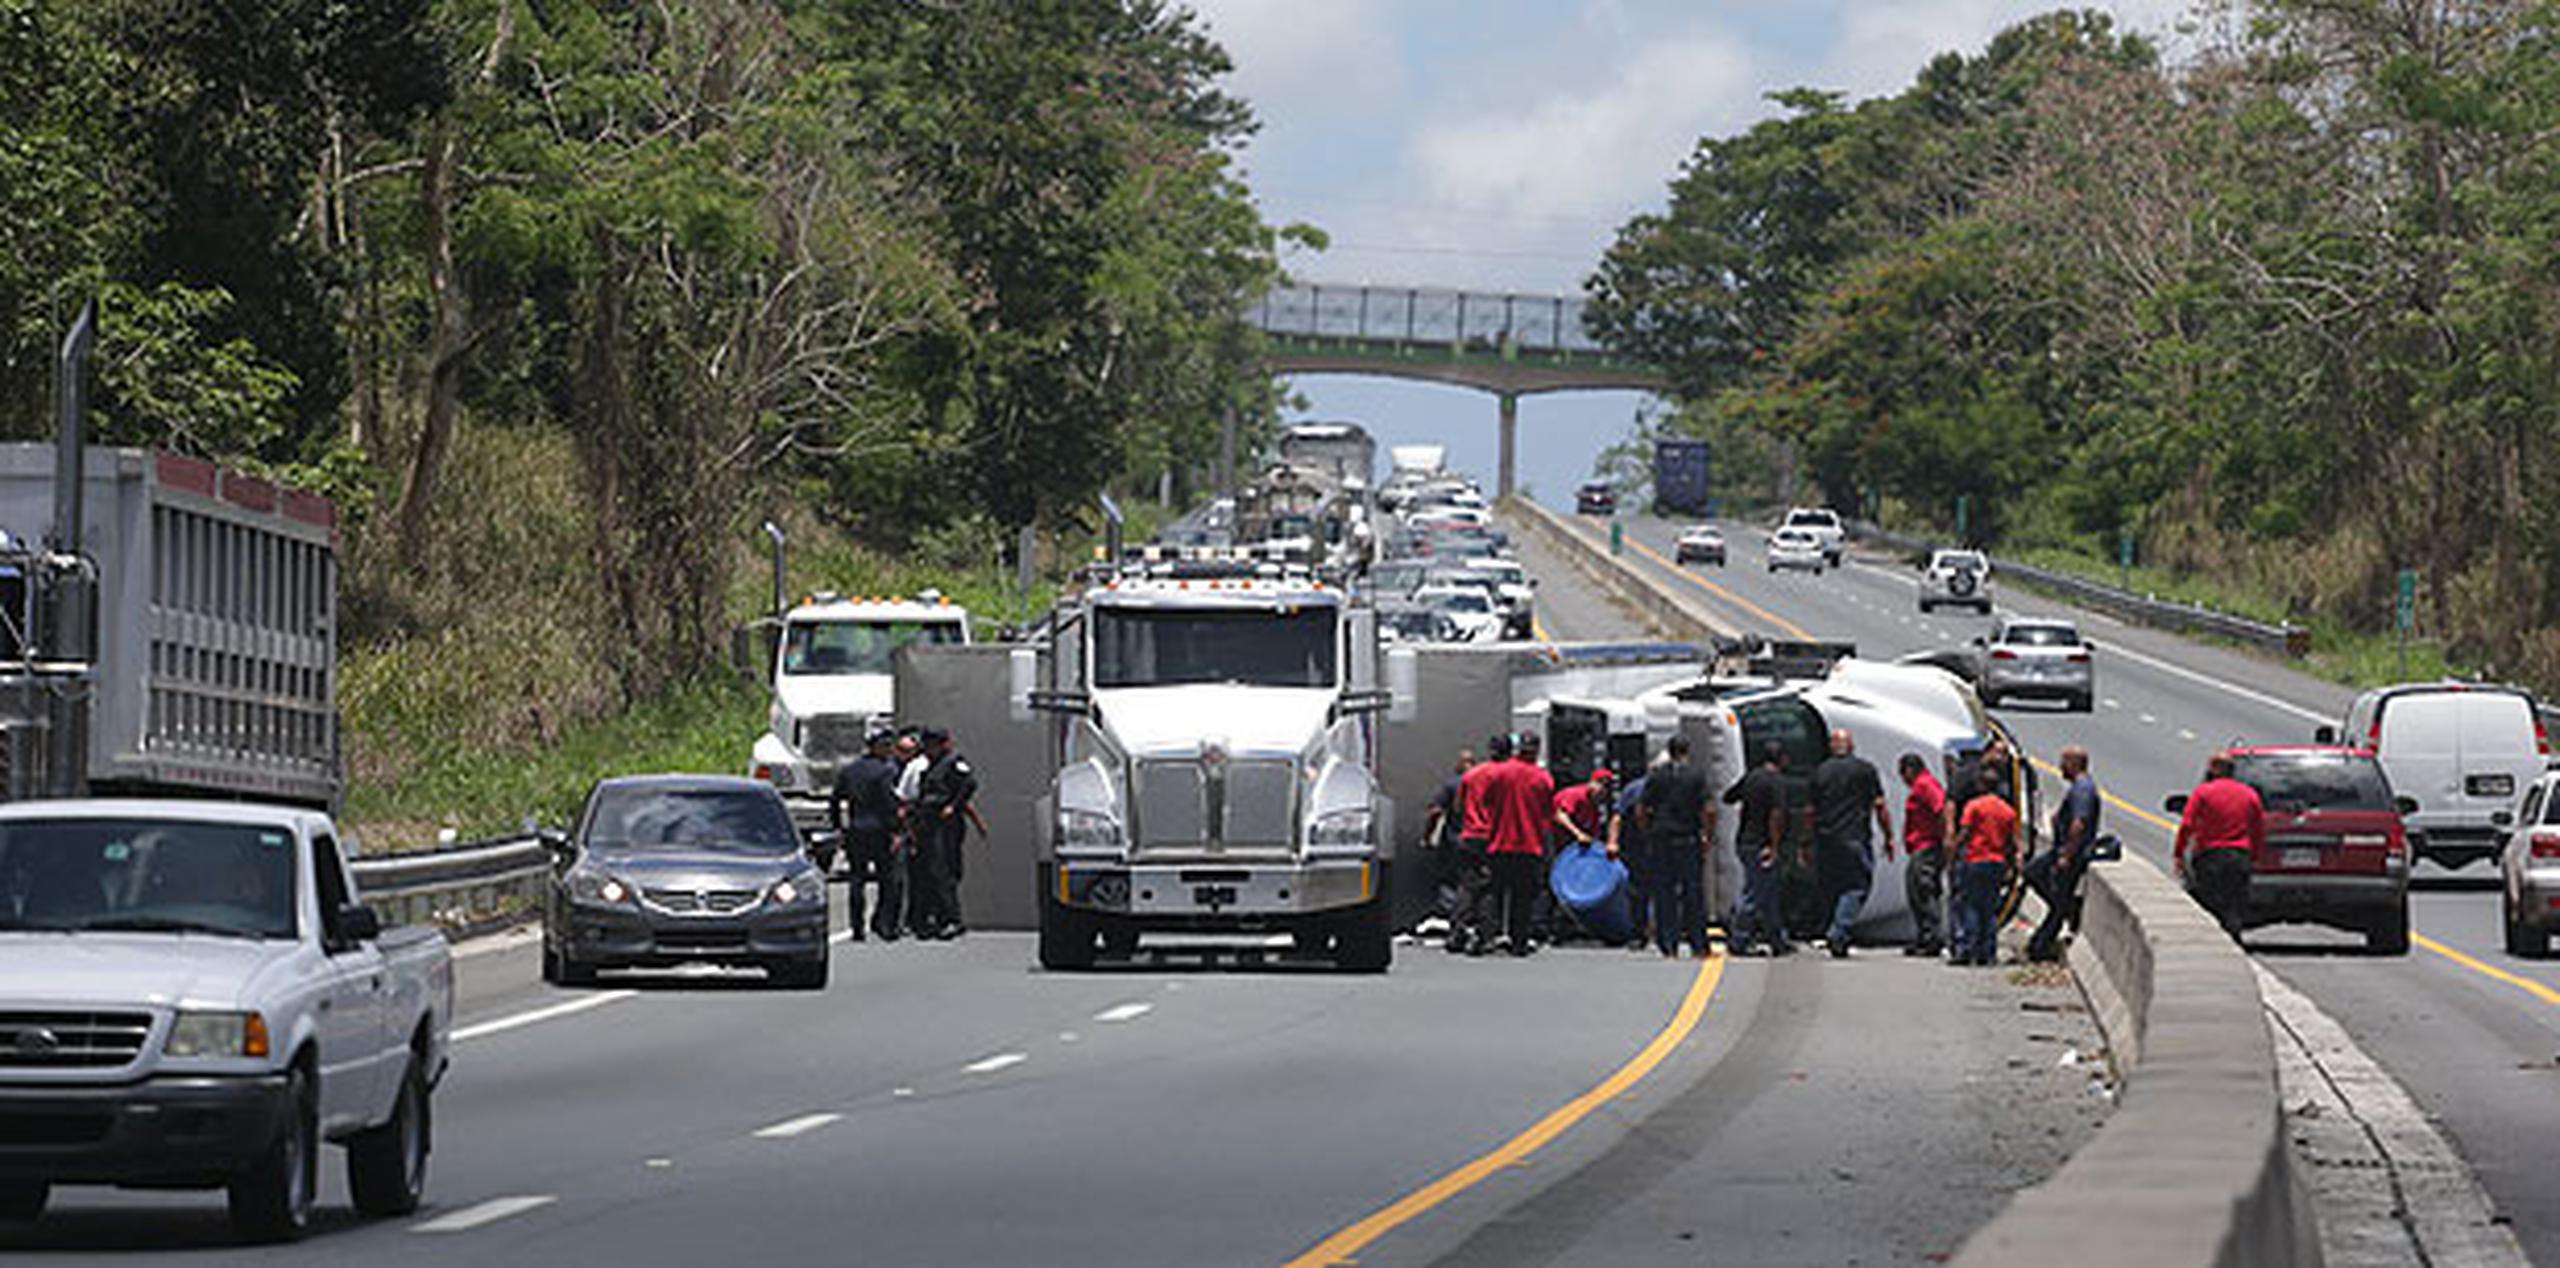 La División de Patrullas de Carreteras del área de Caguas indicó que como vías alternas los conductores pueden tomar las carreteras PR-183 y PR-198, en Las Piedras. (Archivo)